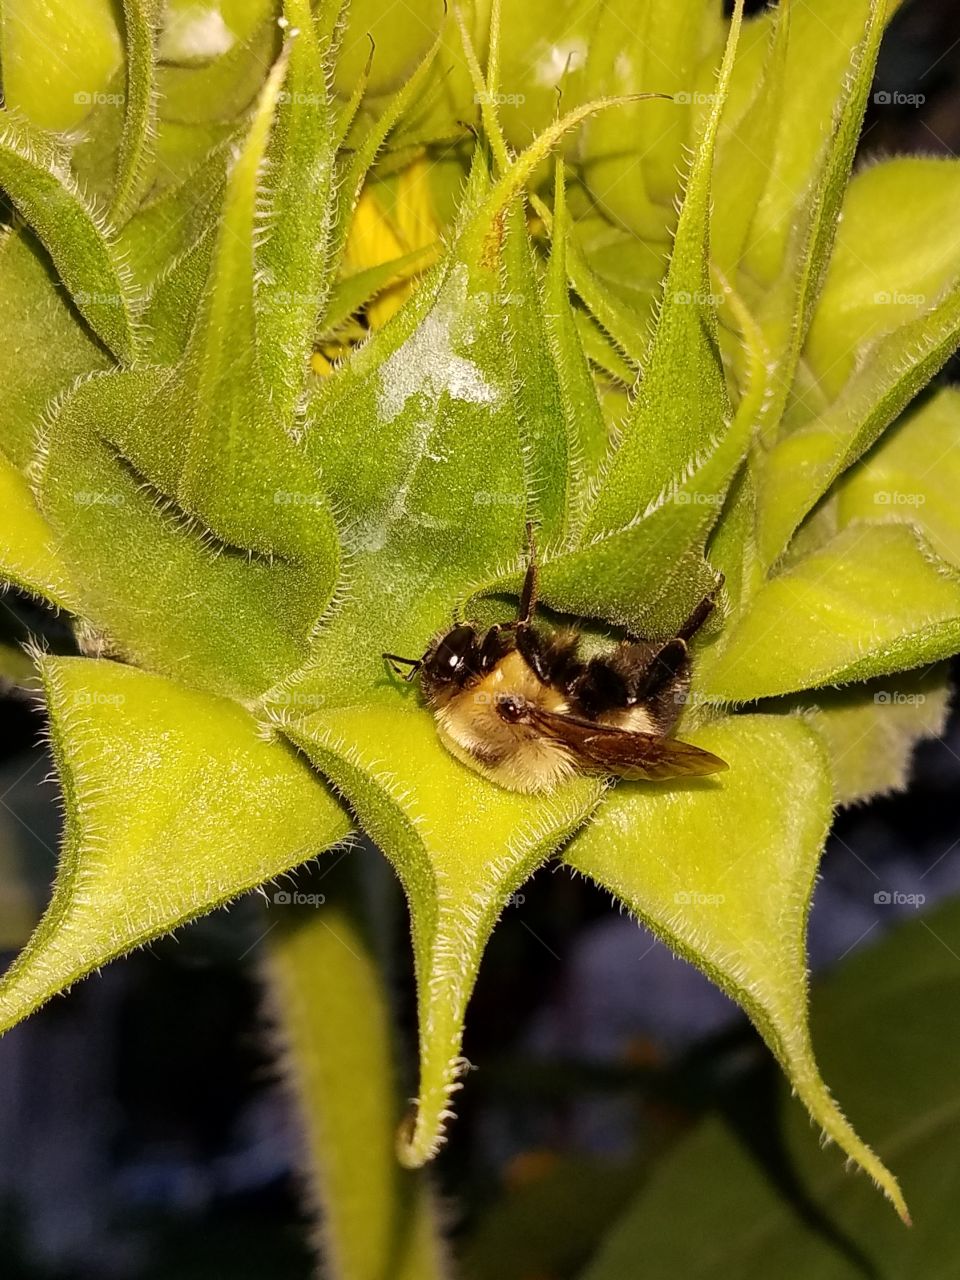 hiding bumble bee